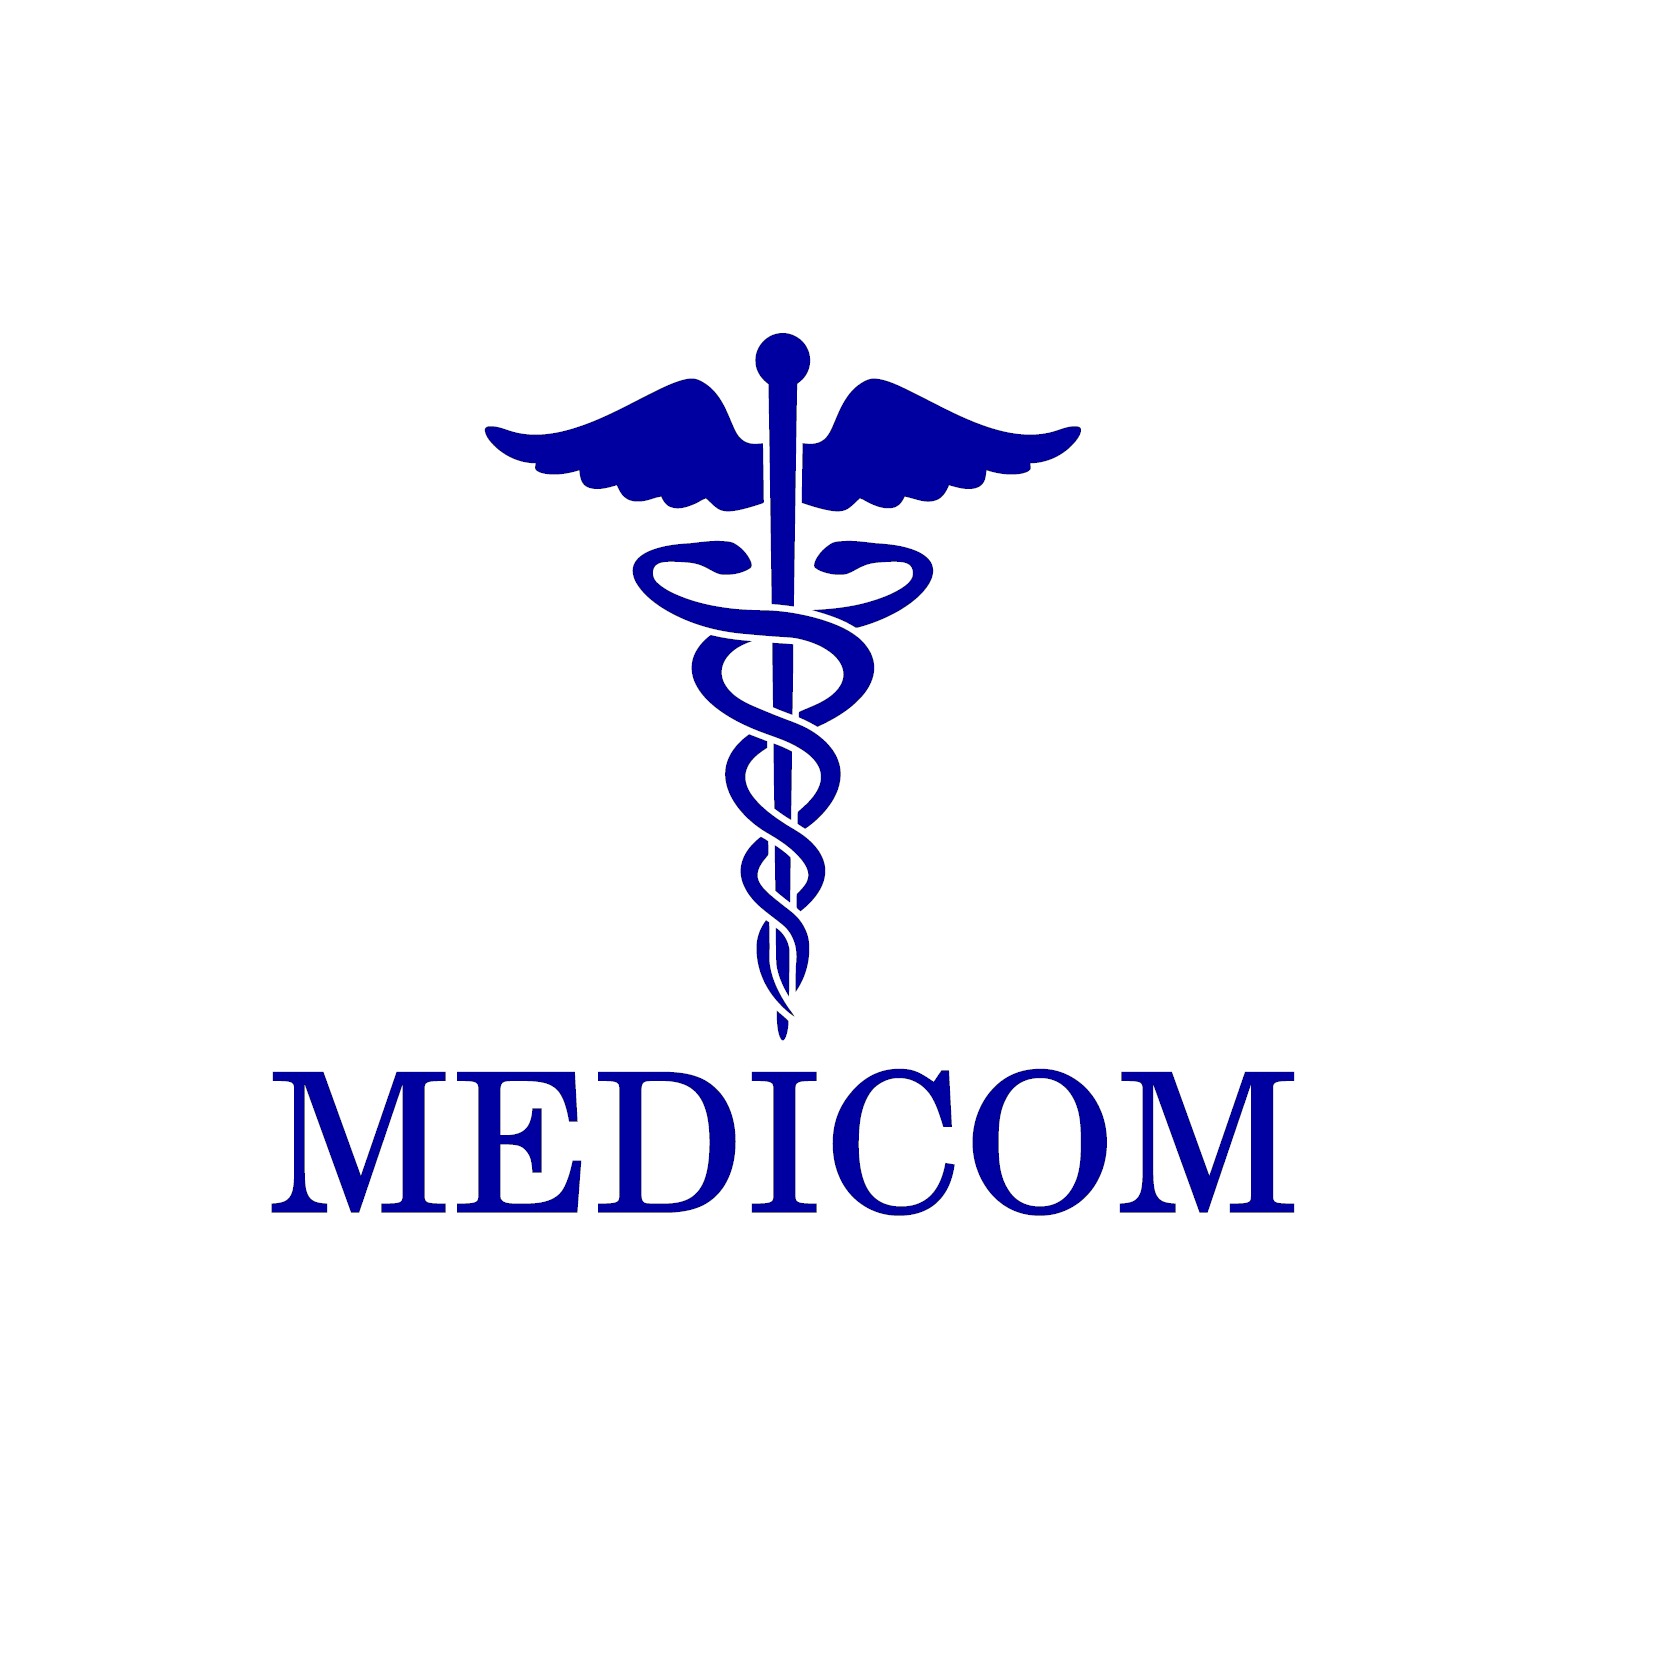 MedicoM